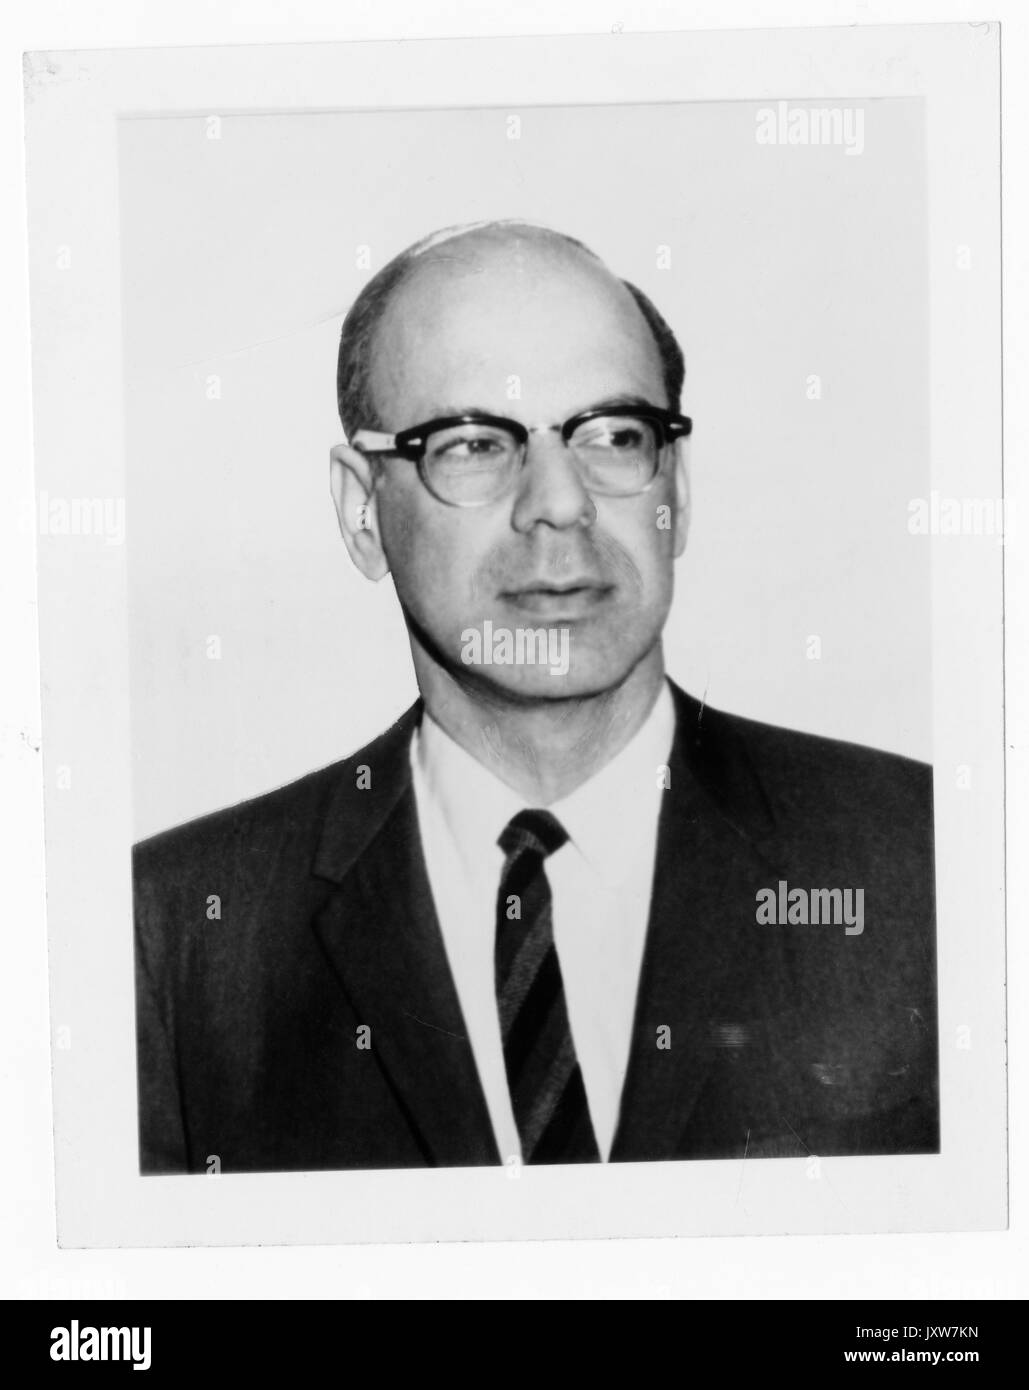 George Benton, stock portrait photographique, assis, de la poitrine vers le haut, de face, 1950. Banque D'Images